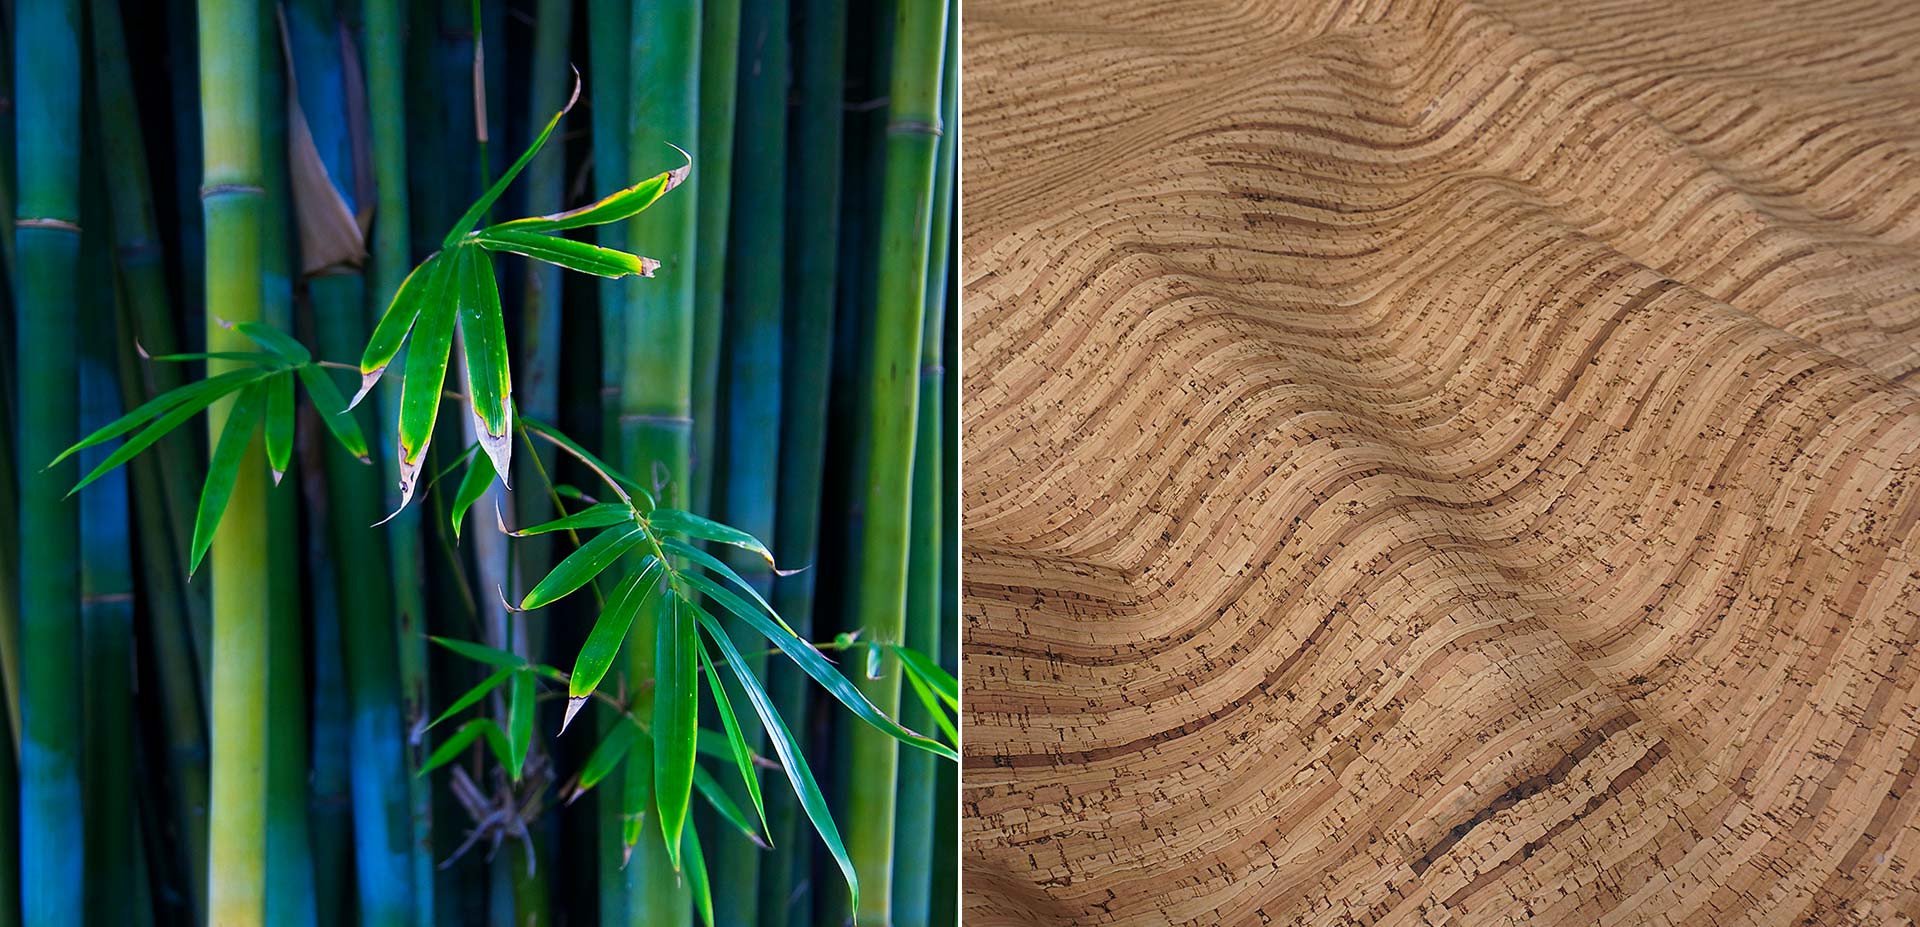 Bamboo Soft aus der Kollektion aus Natur-Kork von ATN Kreative Produktionen